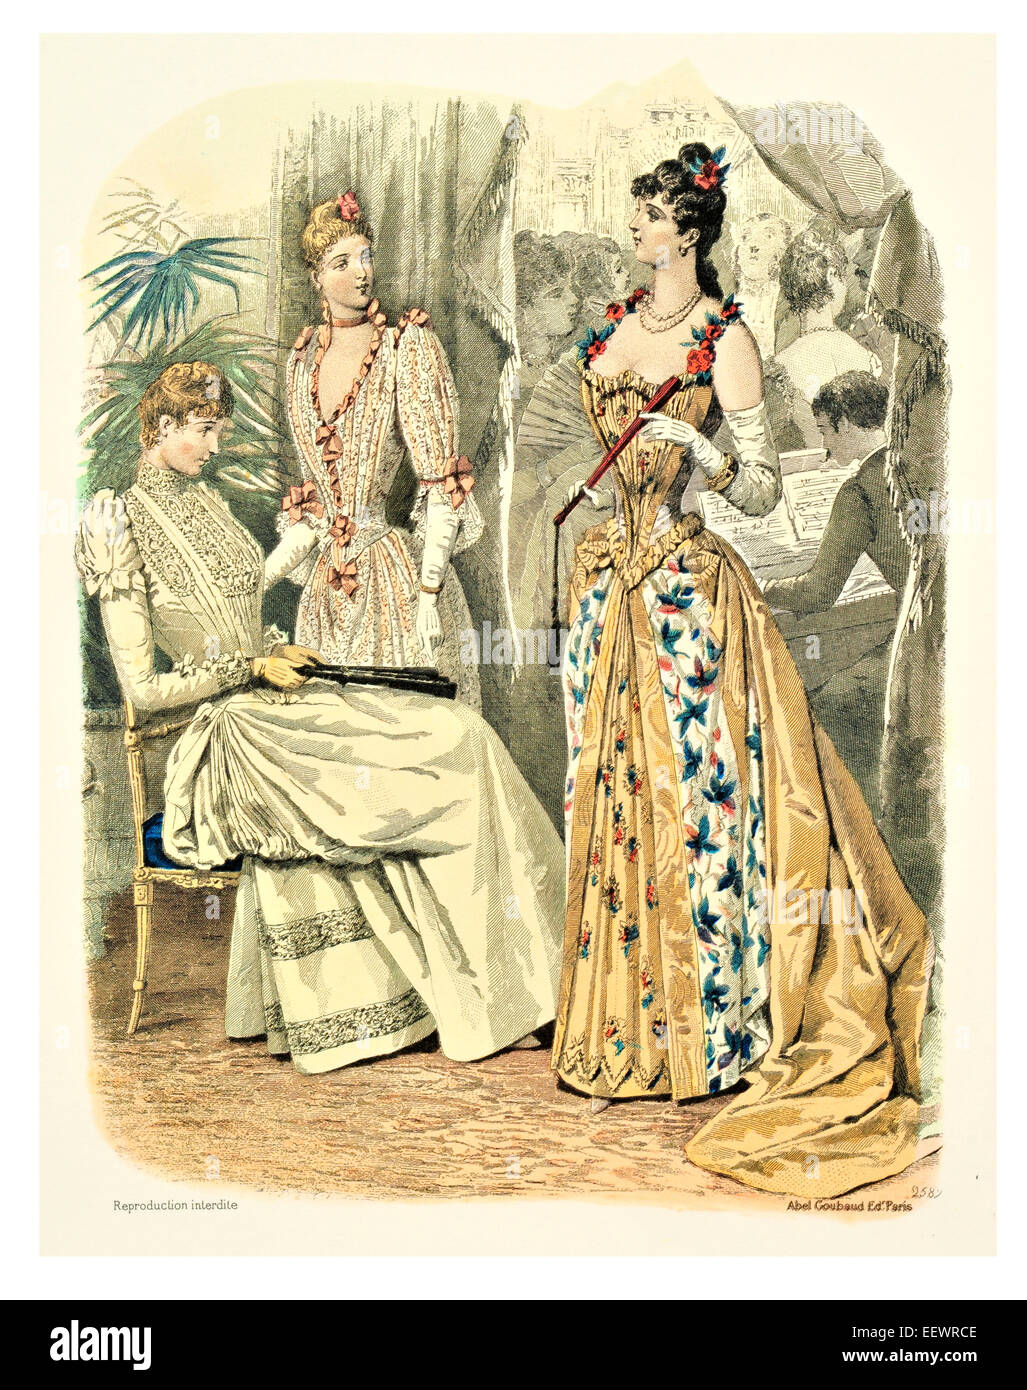 La Mode Illustree trajes de época victoriana moda vestido vestidos vestido falda velo cuff florituras muselina BORDADO Bordado la tapa Foto de stock